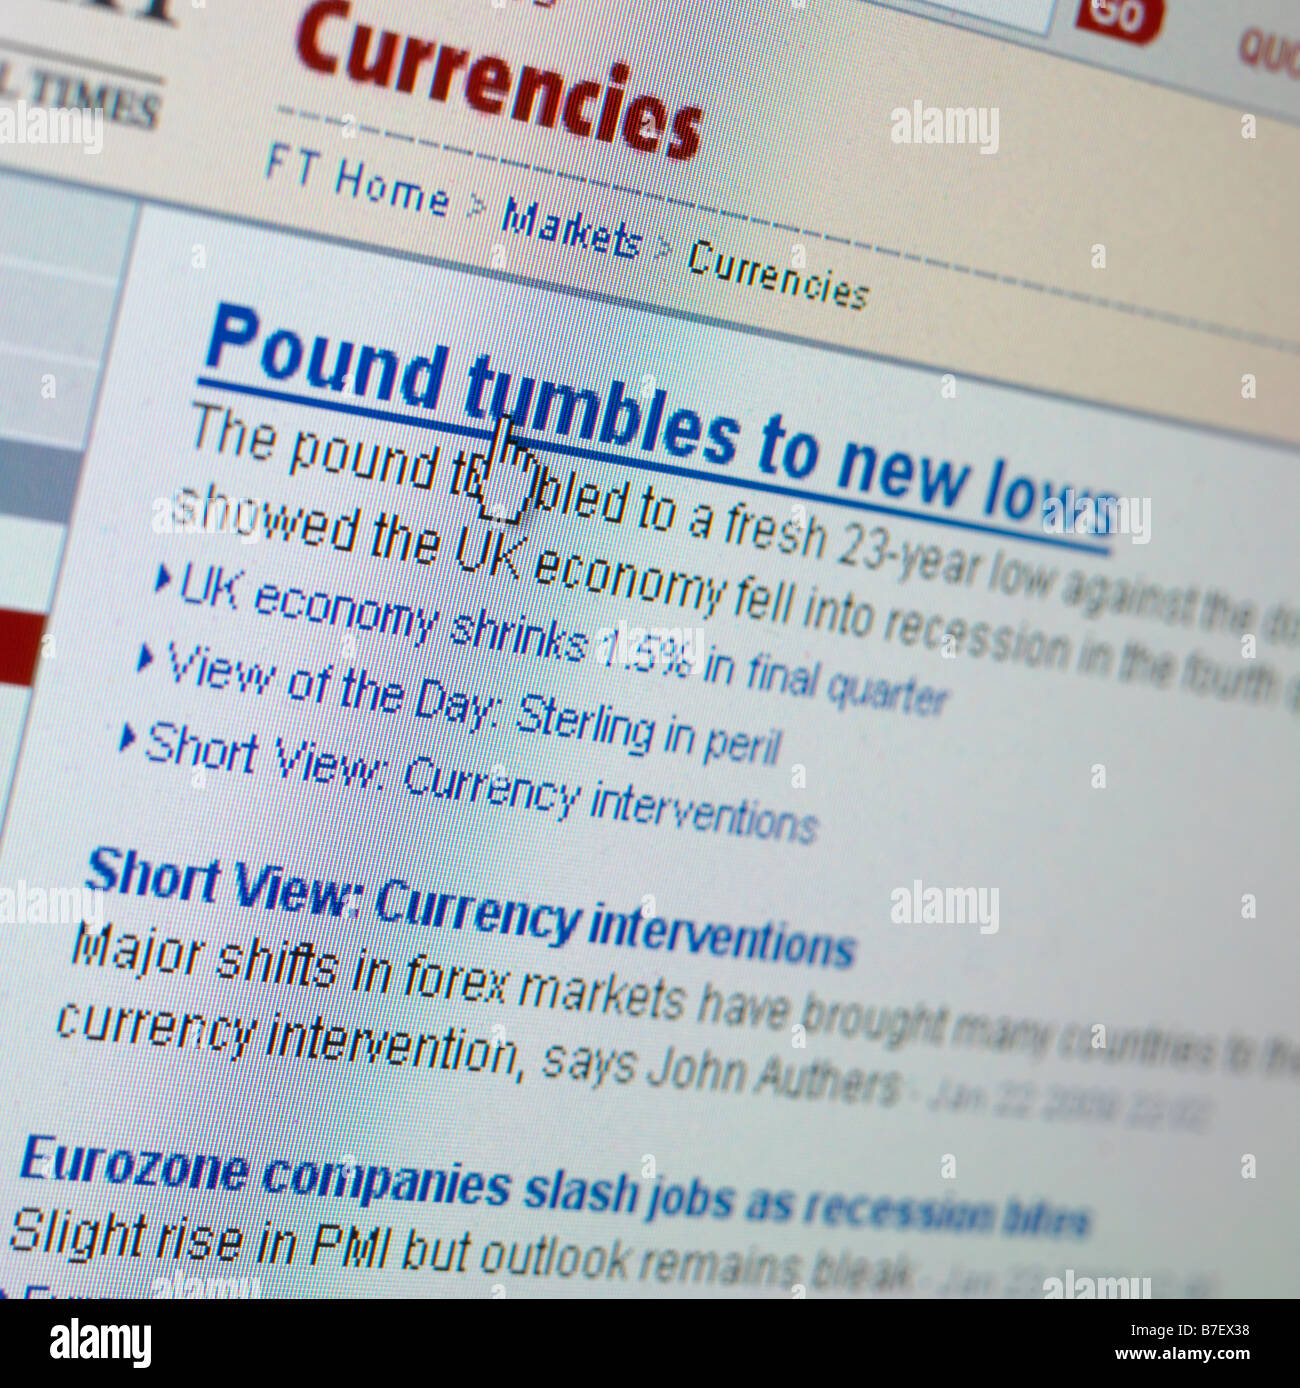 Sitio Web pantalla recesión económica La economía del Reino Unido Foto de stock